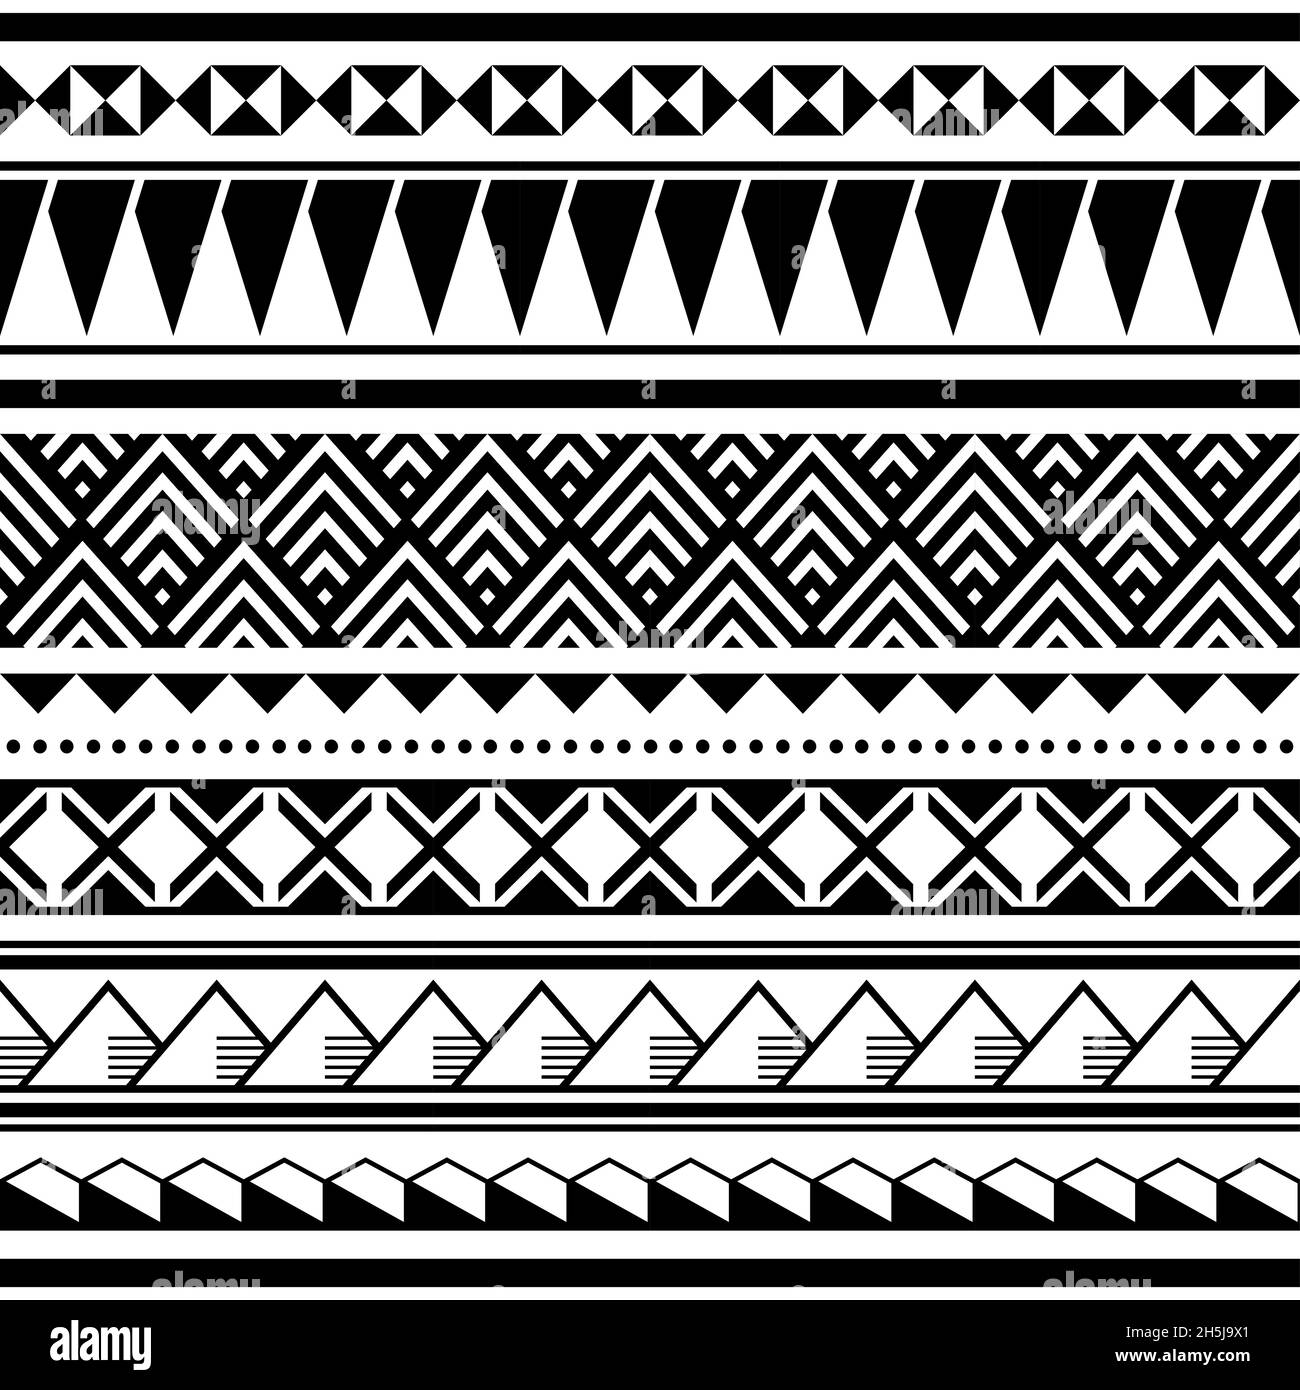 Motif vectoriel, textile ou tissu Hawaian sans couture, en noir et blanc inspiré des tatoos de Polynésie Illustration de Vecteur